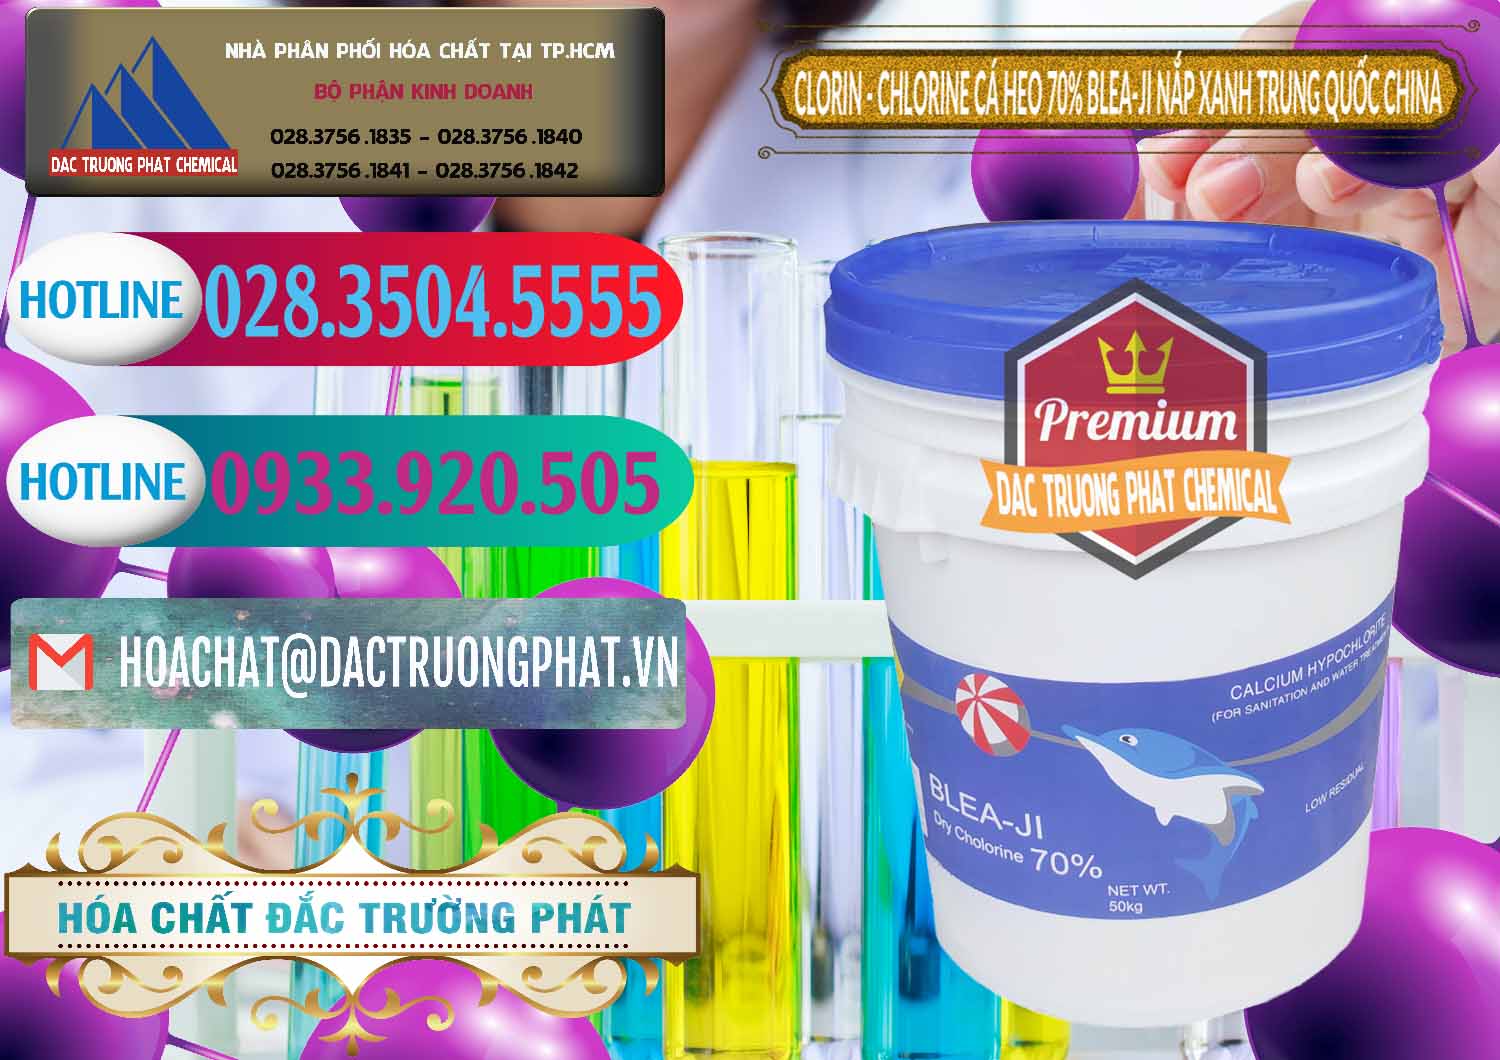 Đơn vị cung ứng & bán Clorin - Chlorine Cá Heo 70% Cá Heo Blea-Ji Thùng Tròn Nắp Xanh Trung Quốc China - 0208 - Cty phân phối ( kinh doanh ) hóa chất tại TP.HCM - truongphat.vn